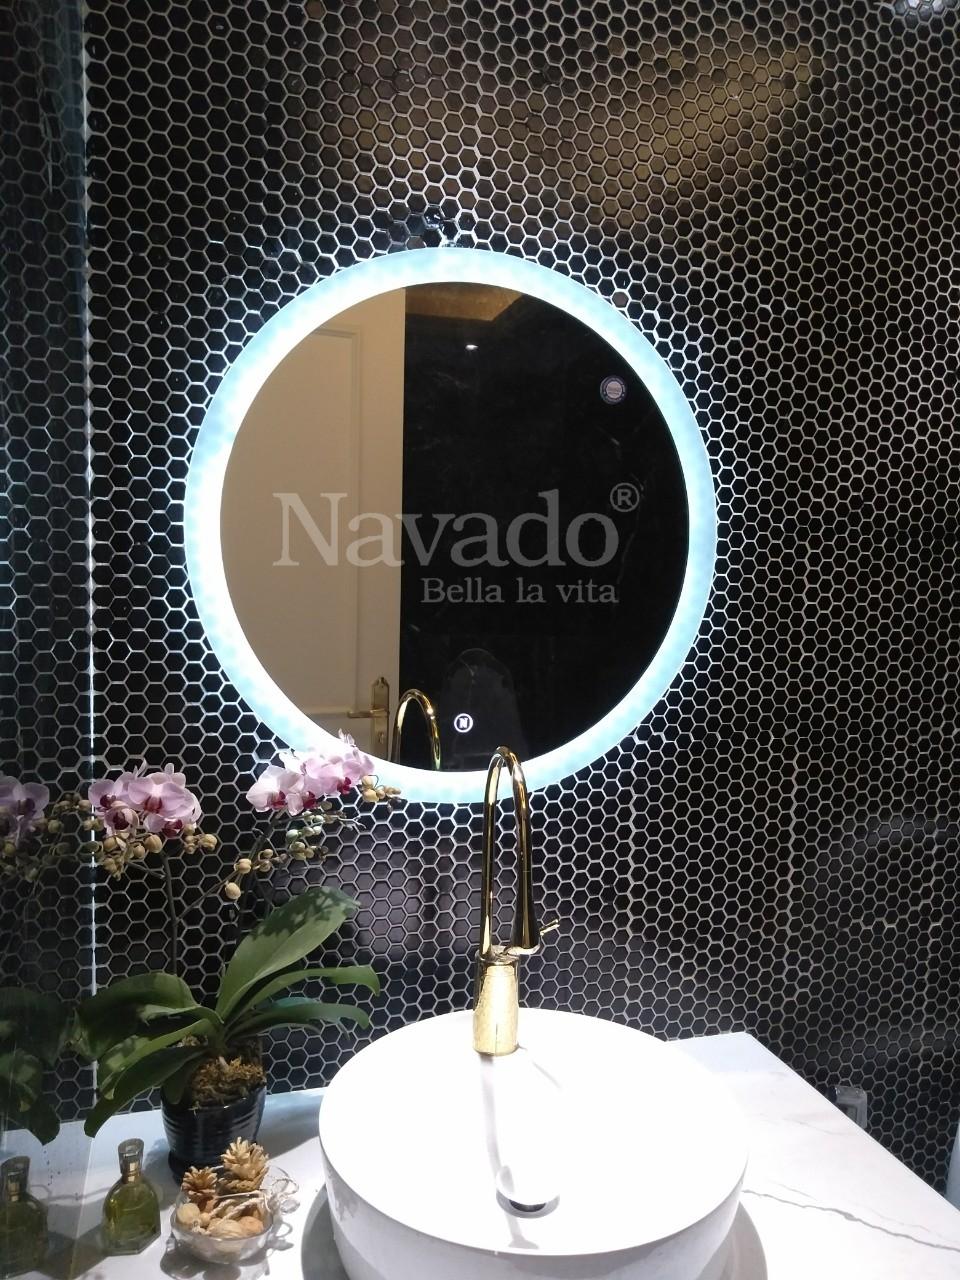 Gương tròn cao cấp Navado đèn LED là lựa chọn không thể tuyệt vời hơn để làm nổi bật không gian sống của bạn. Thiết kế gương tròn đẹp mắt kết hợp với ánh sáng LED tinh tế và tiên tiến giúp tạo ra một không gian sống đầy mới lạ và sang trọng. Với gương tròn cao cấp Navado đèn LED, bạn sẽ thấy được sự khác biệt và sự tiện ích vượt trội mà nó mang lại.